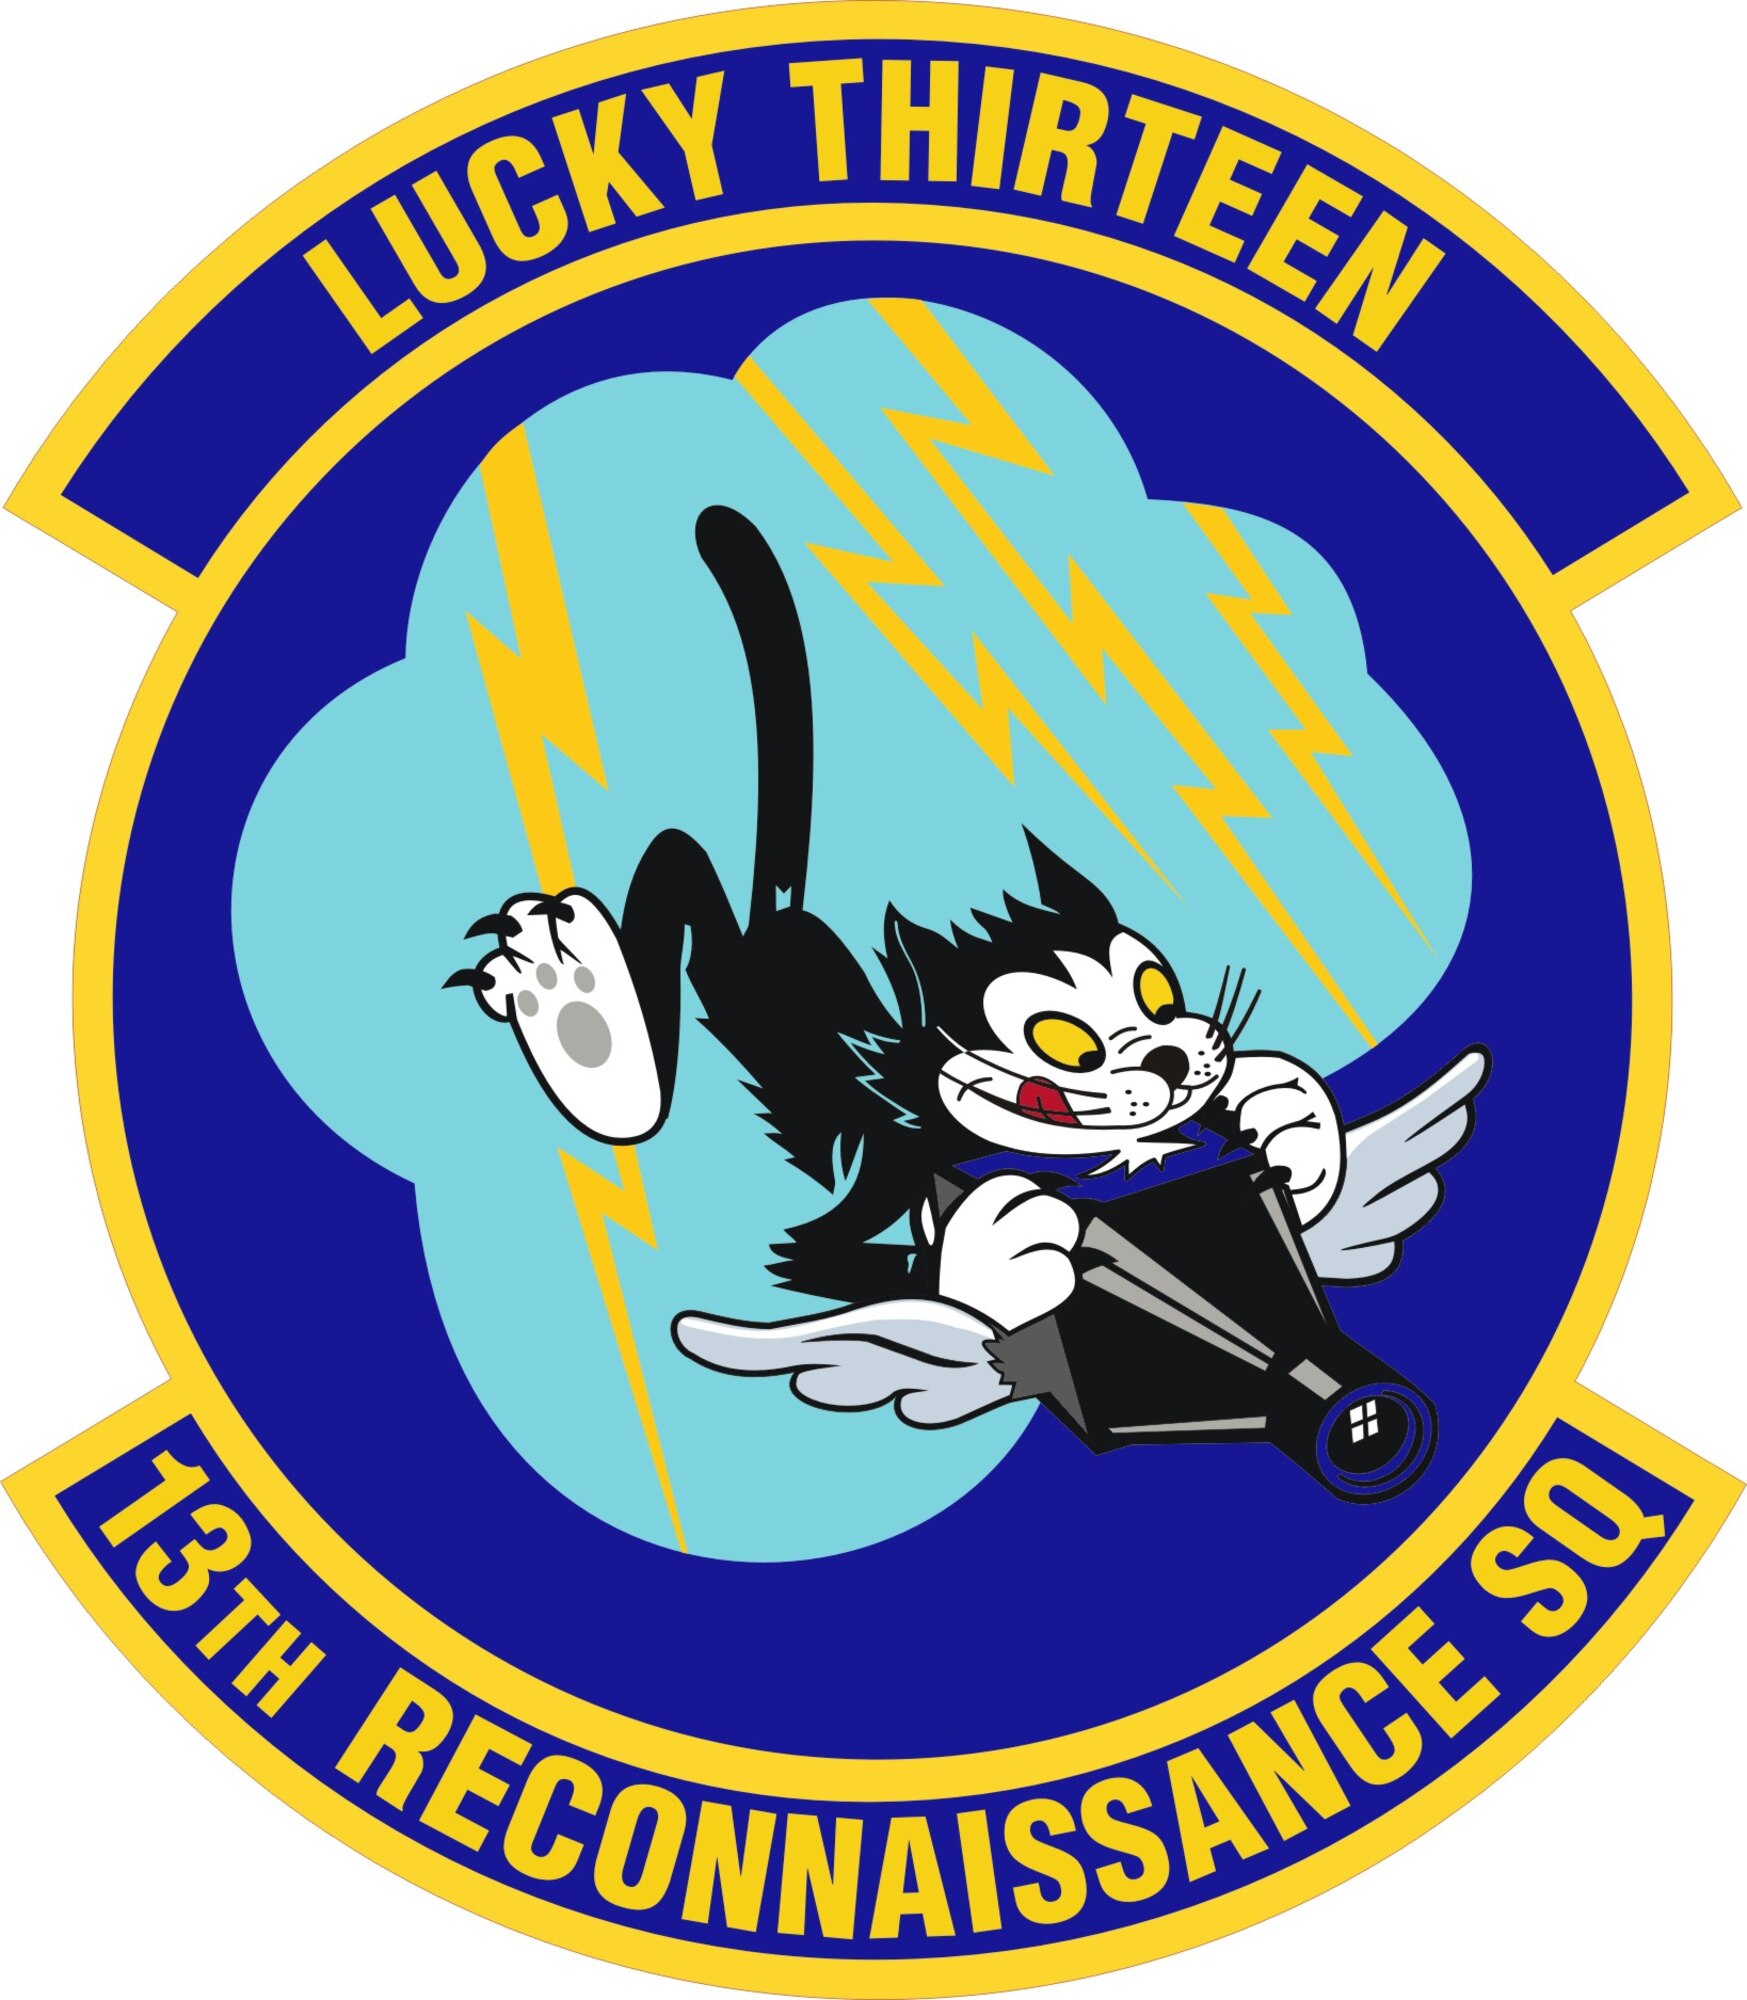 13th Reconnaissance Squadron patch